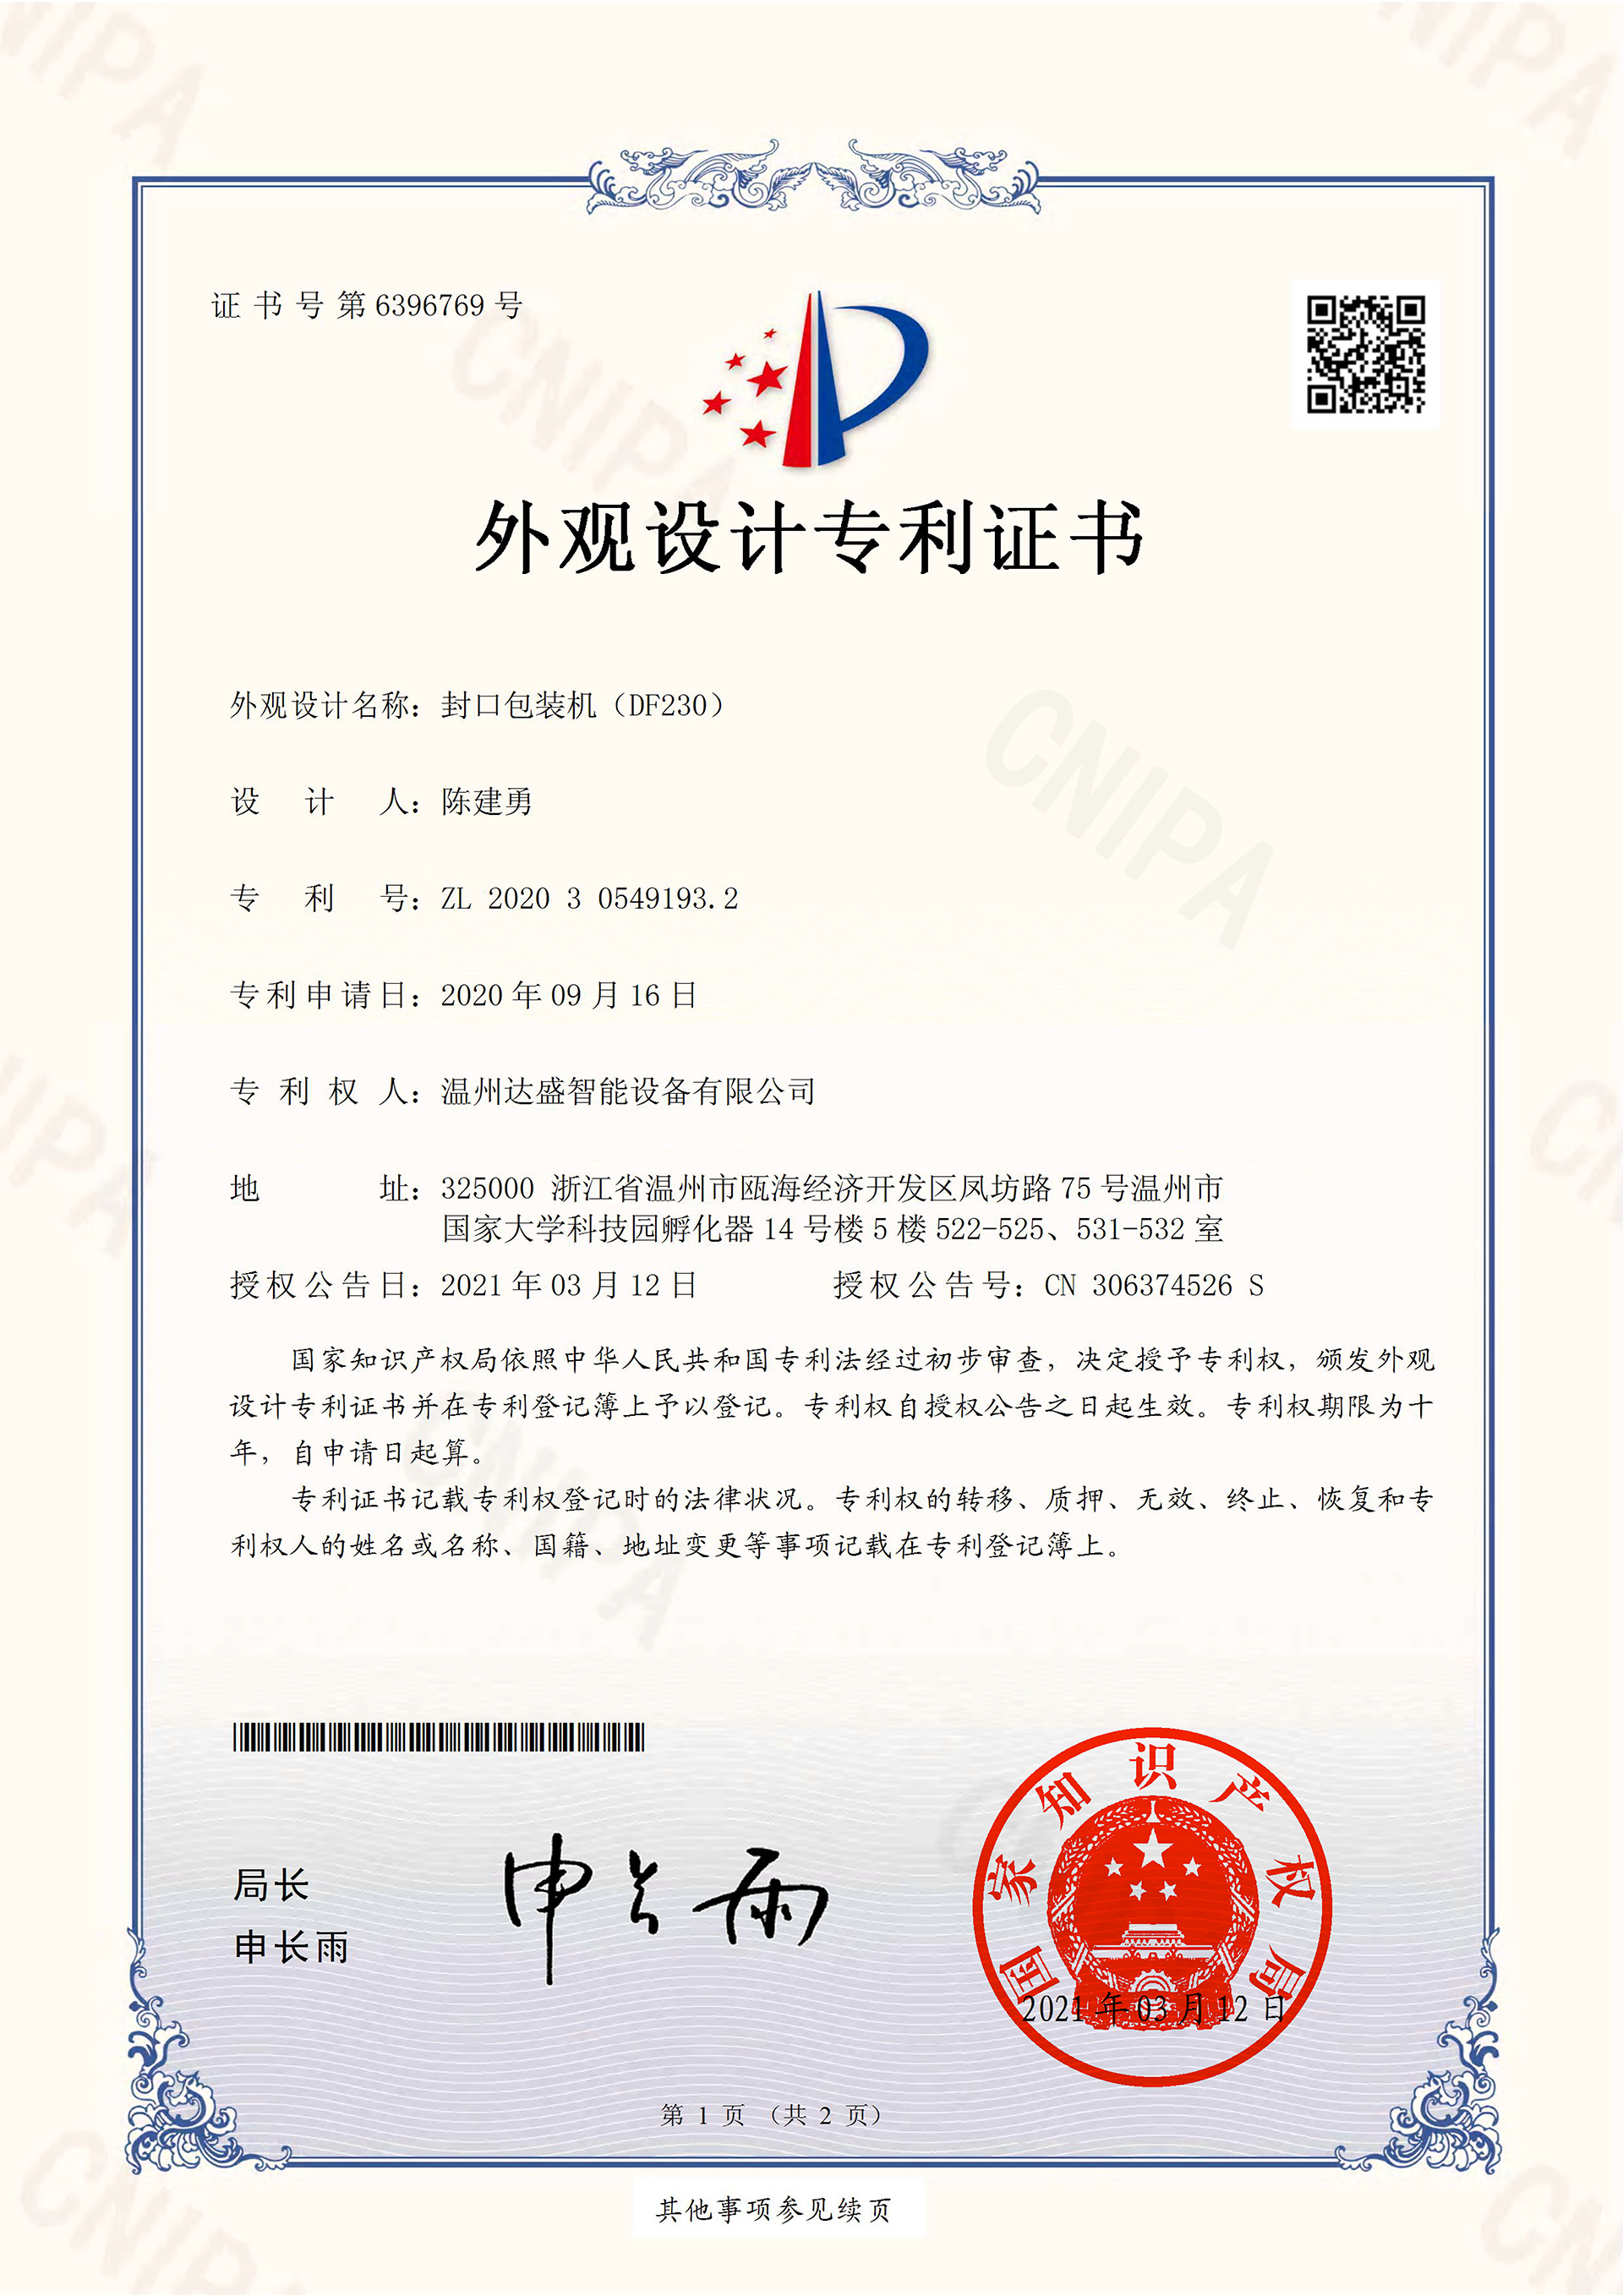 封口包装机（DF230）-外观设计专利证书(签章)-1